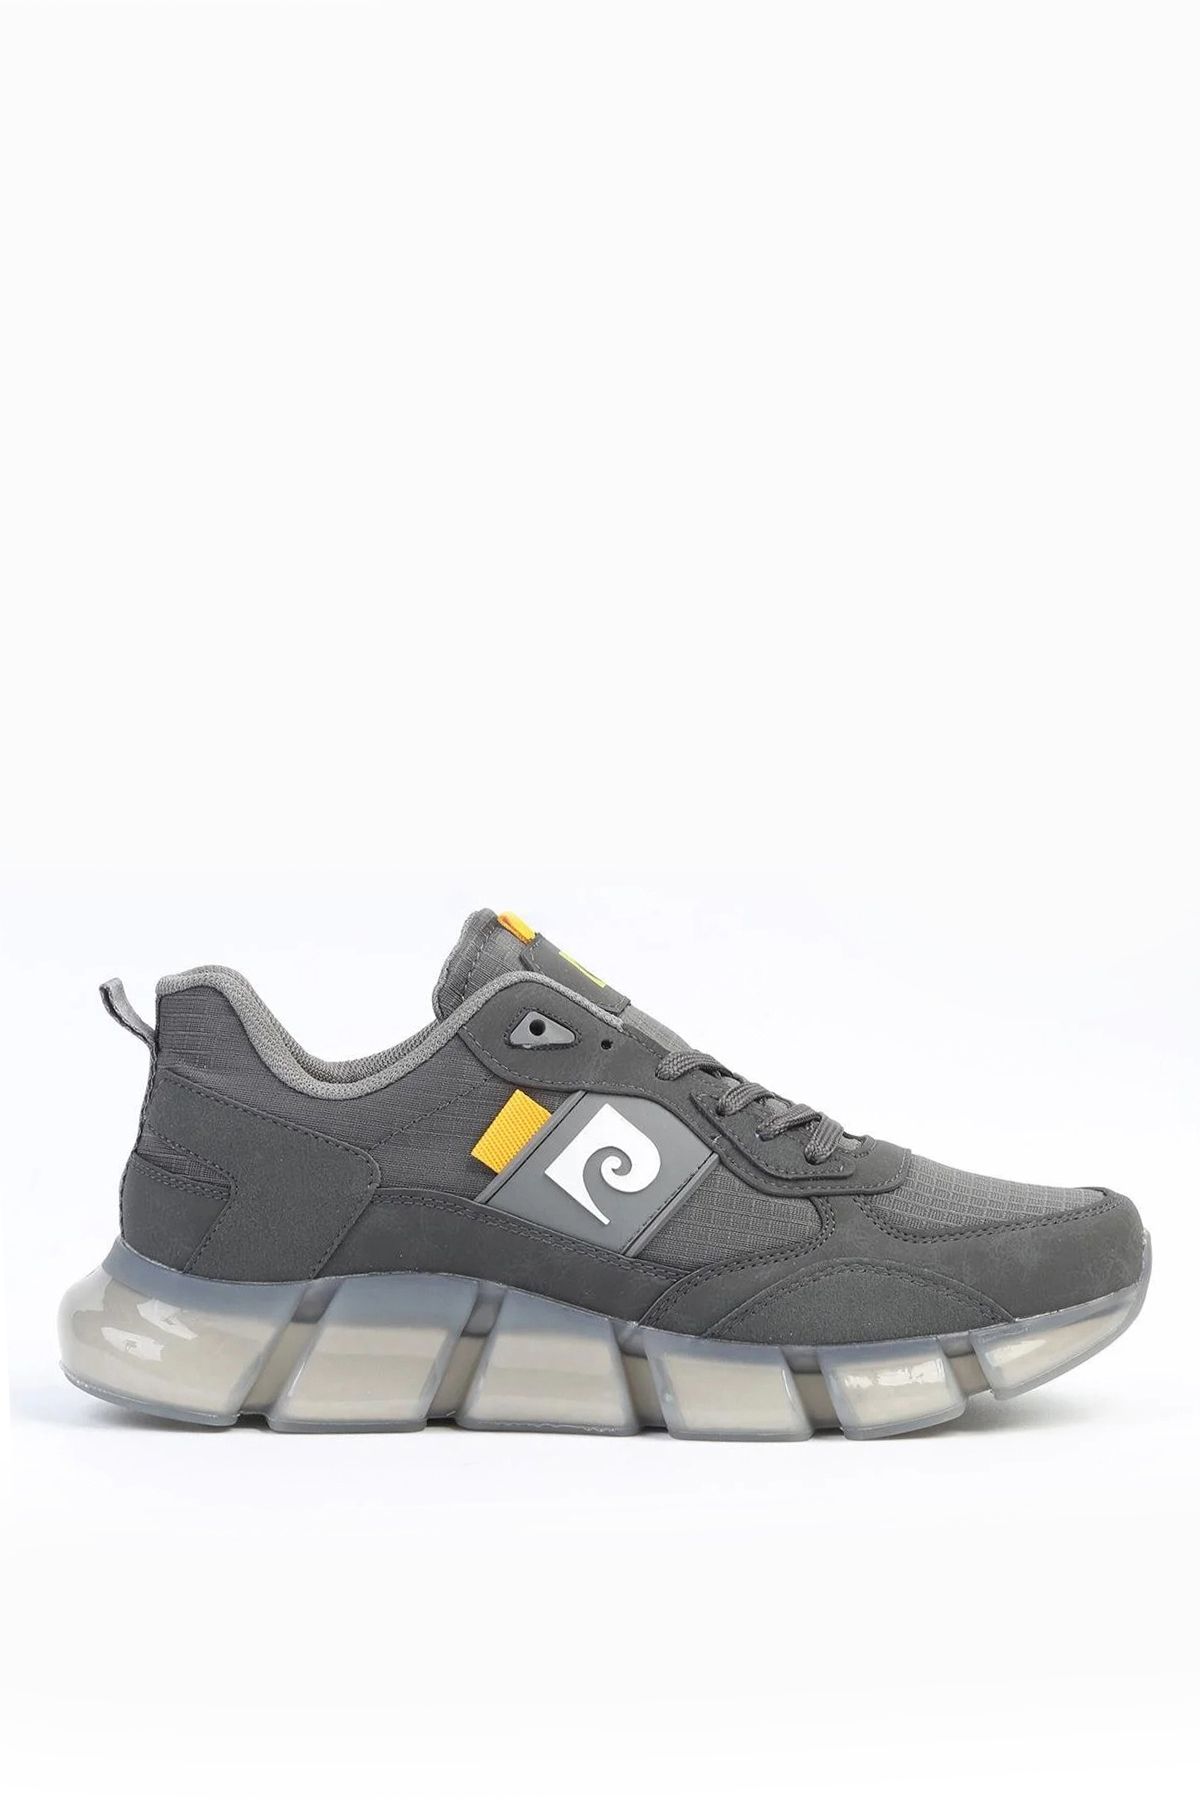 Pierre Cardin Erkek Günlük Spor Ayakkabı Şeffaf Air Taban Günlük Sneaker